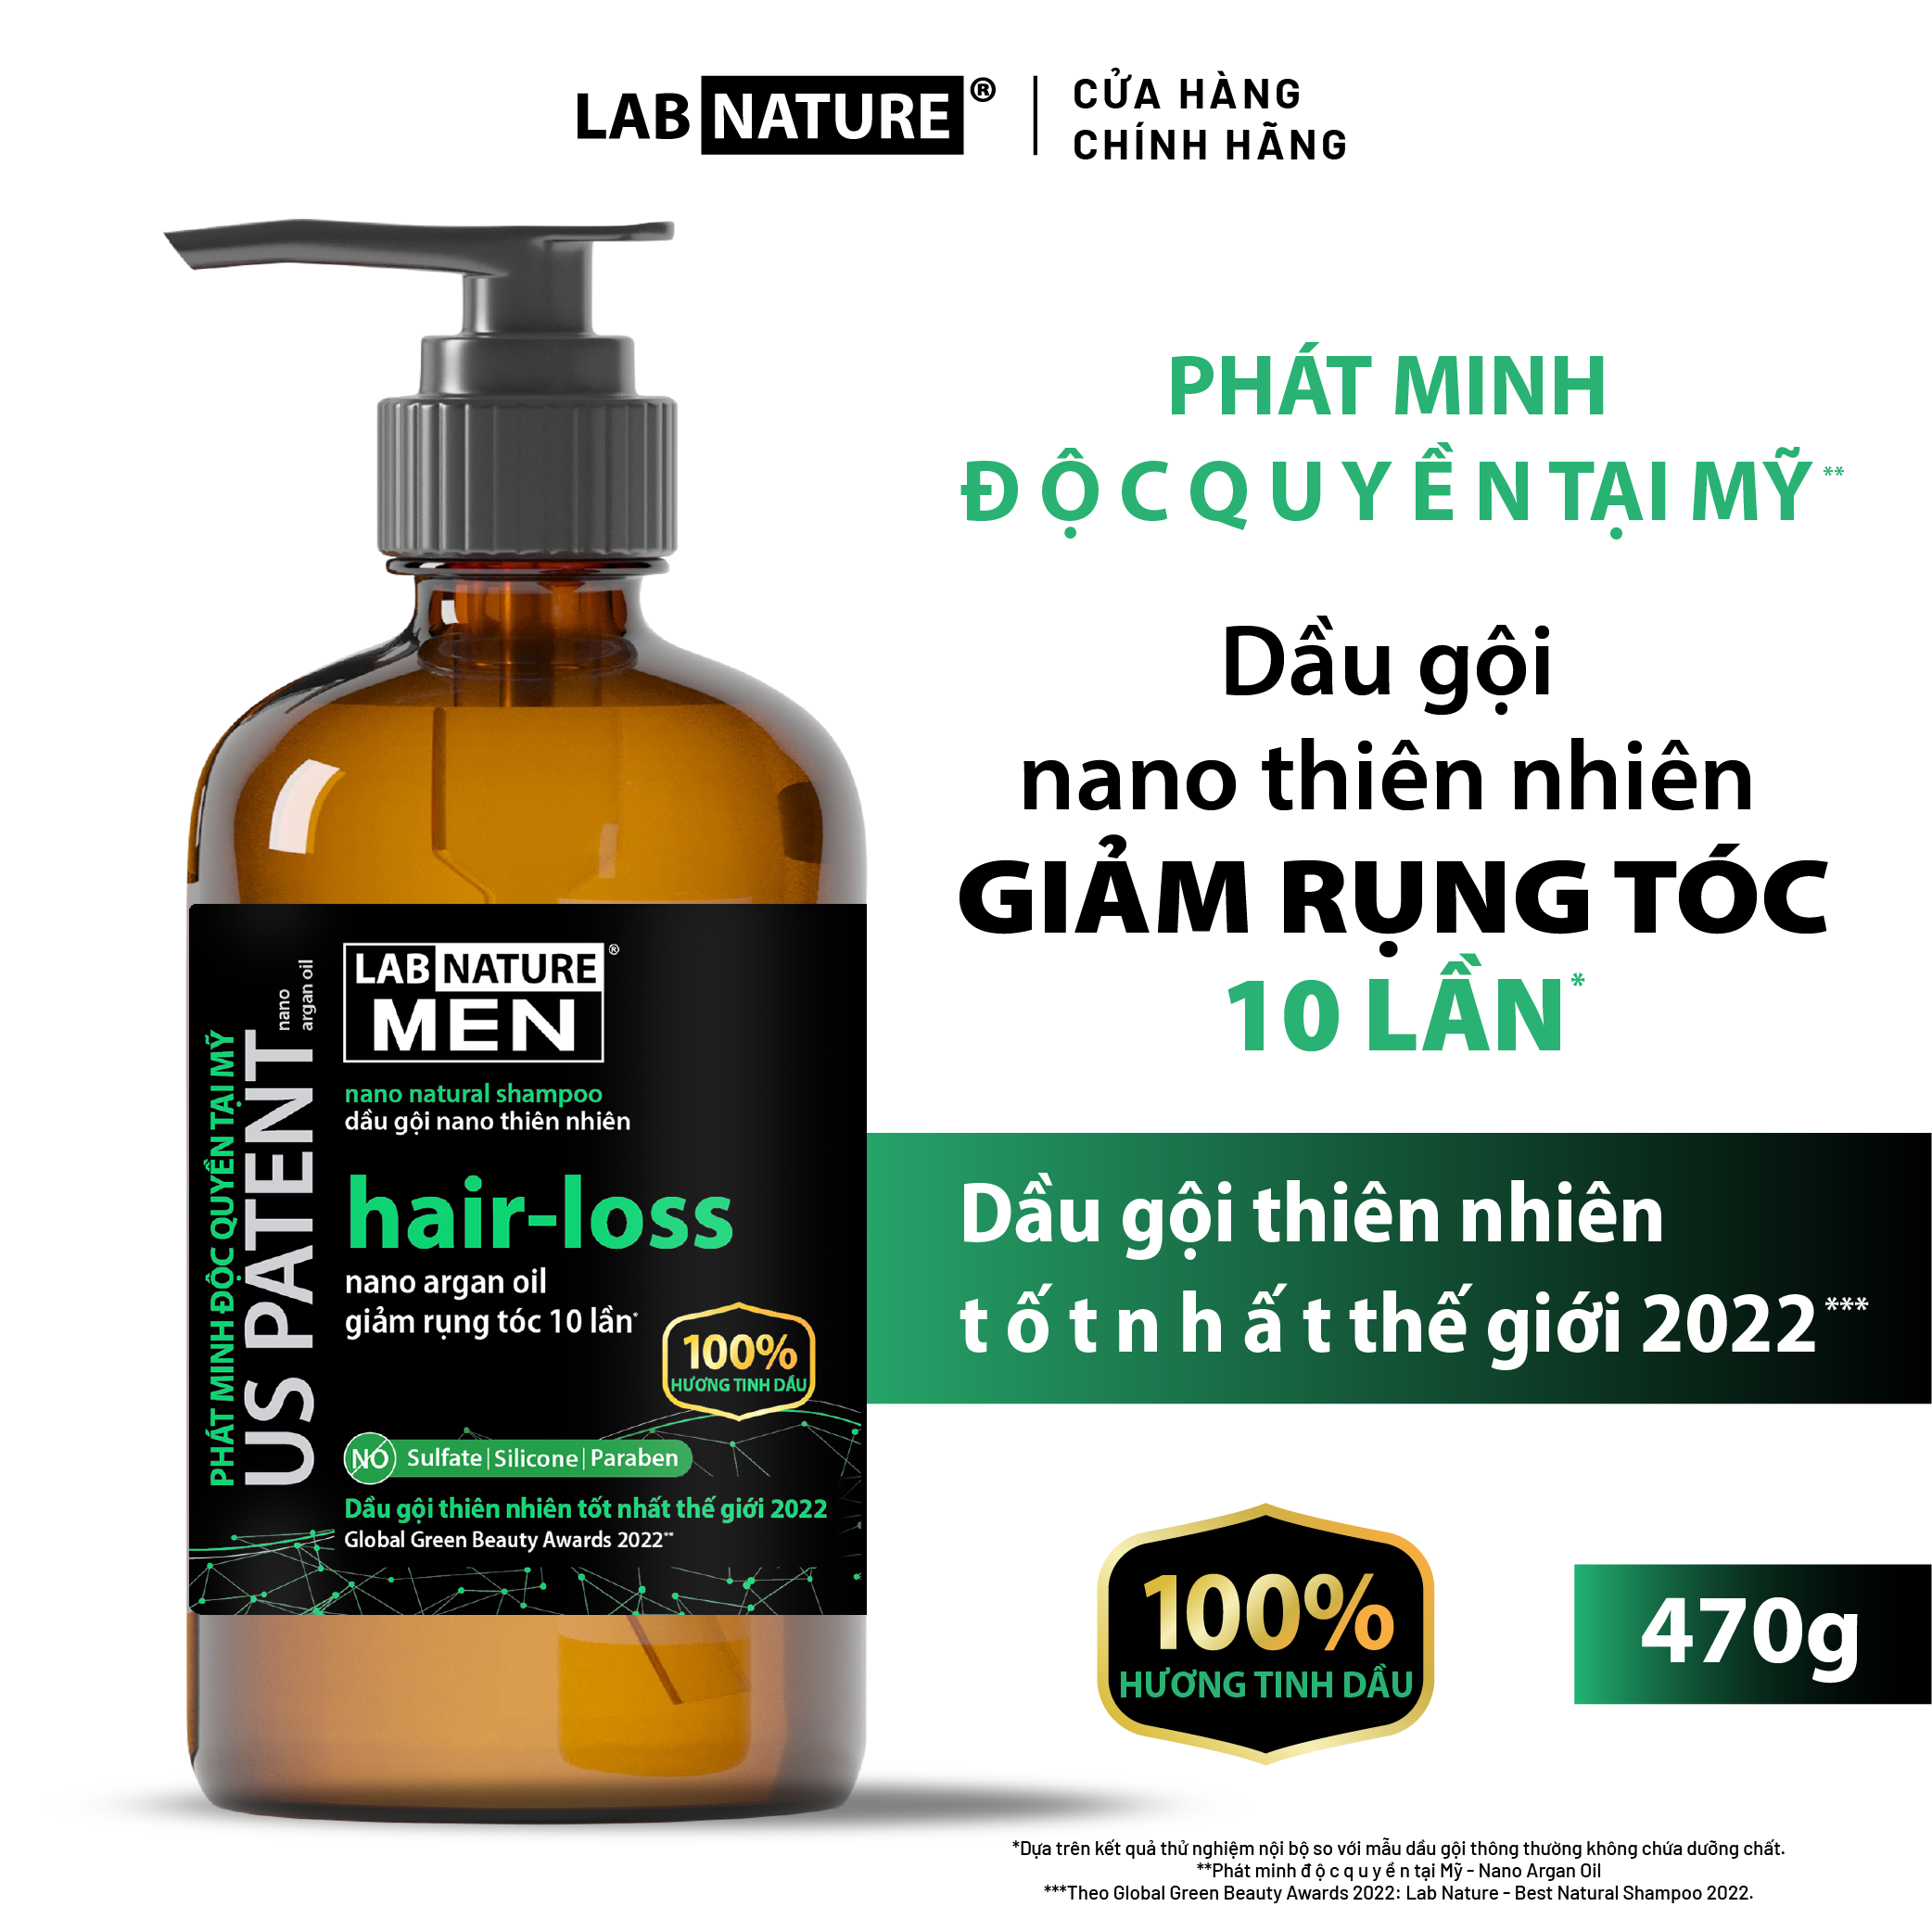 Dầu gội Lab Nature Men Hair-loss 470g - Công nghệ Nano Giảm Rụng Tóc 10 Lần